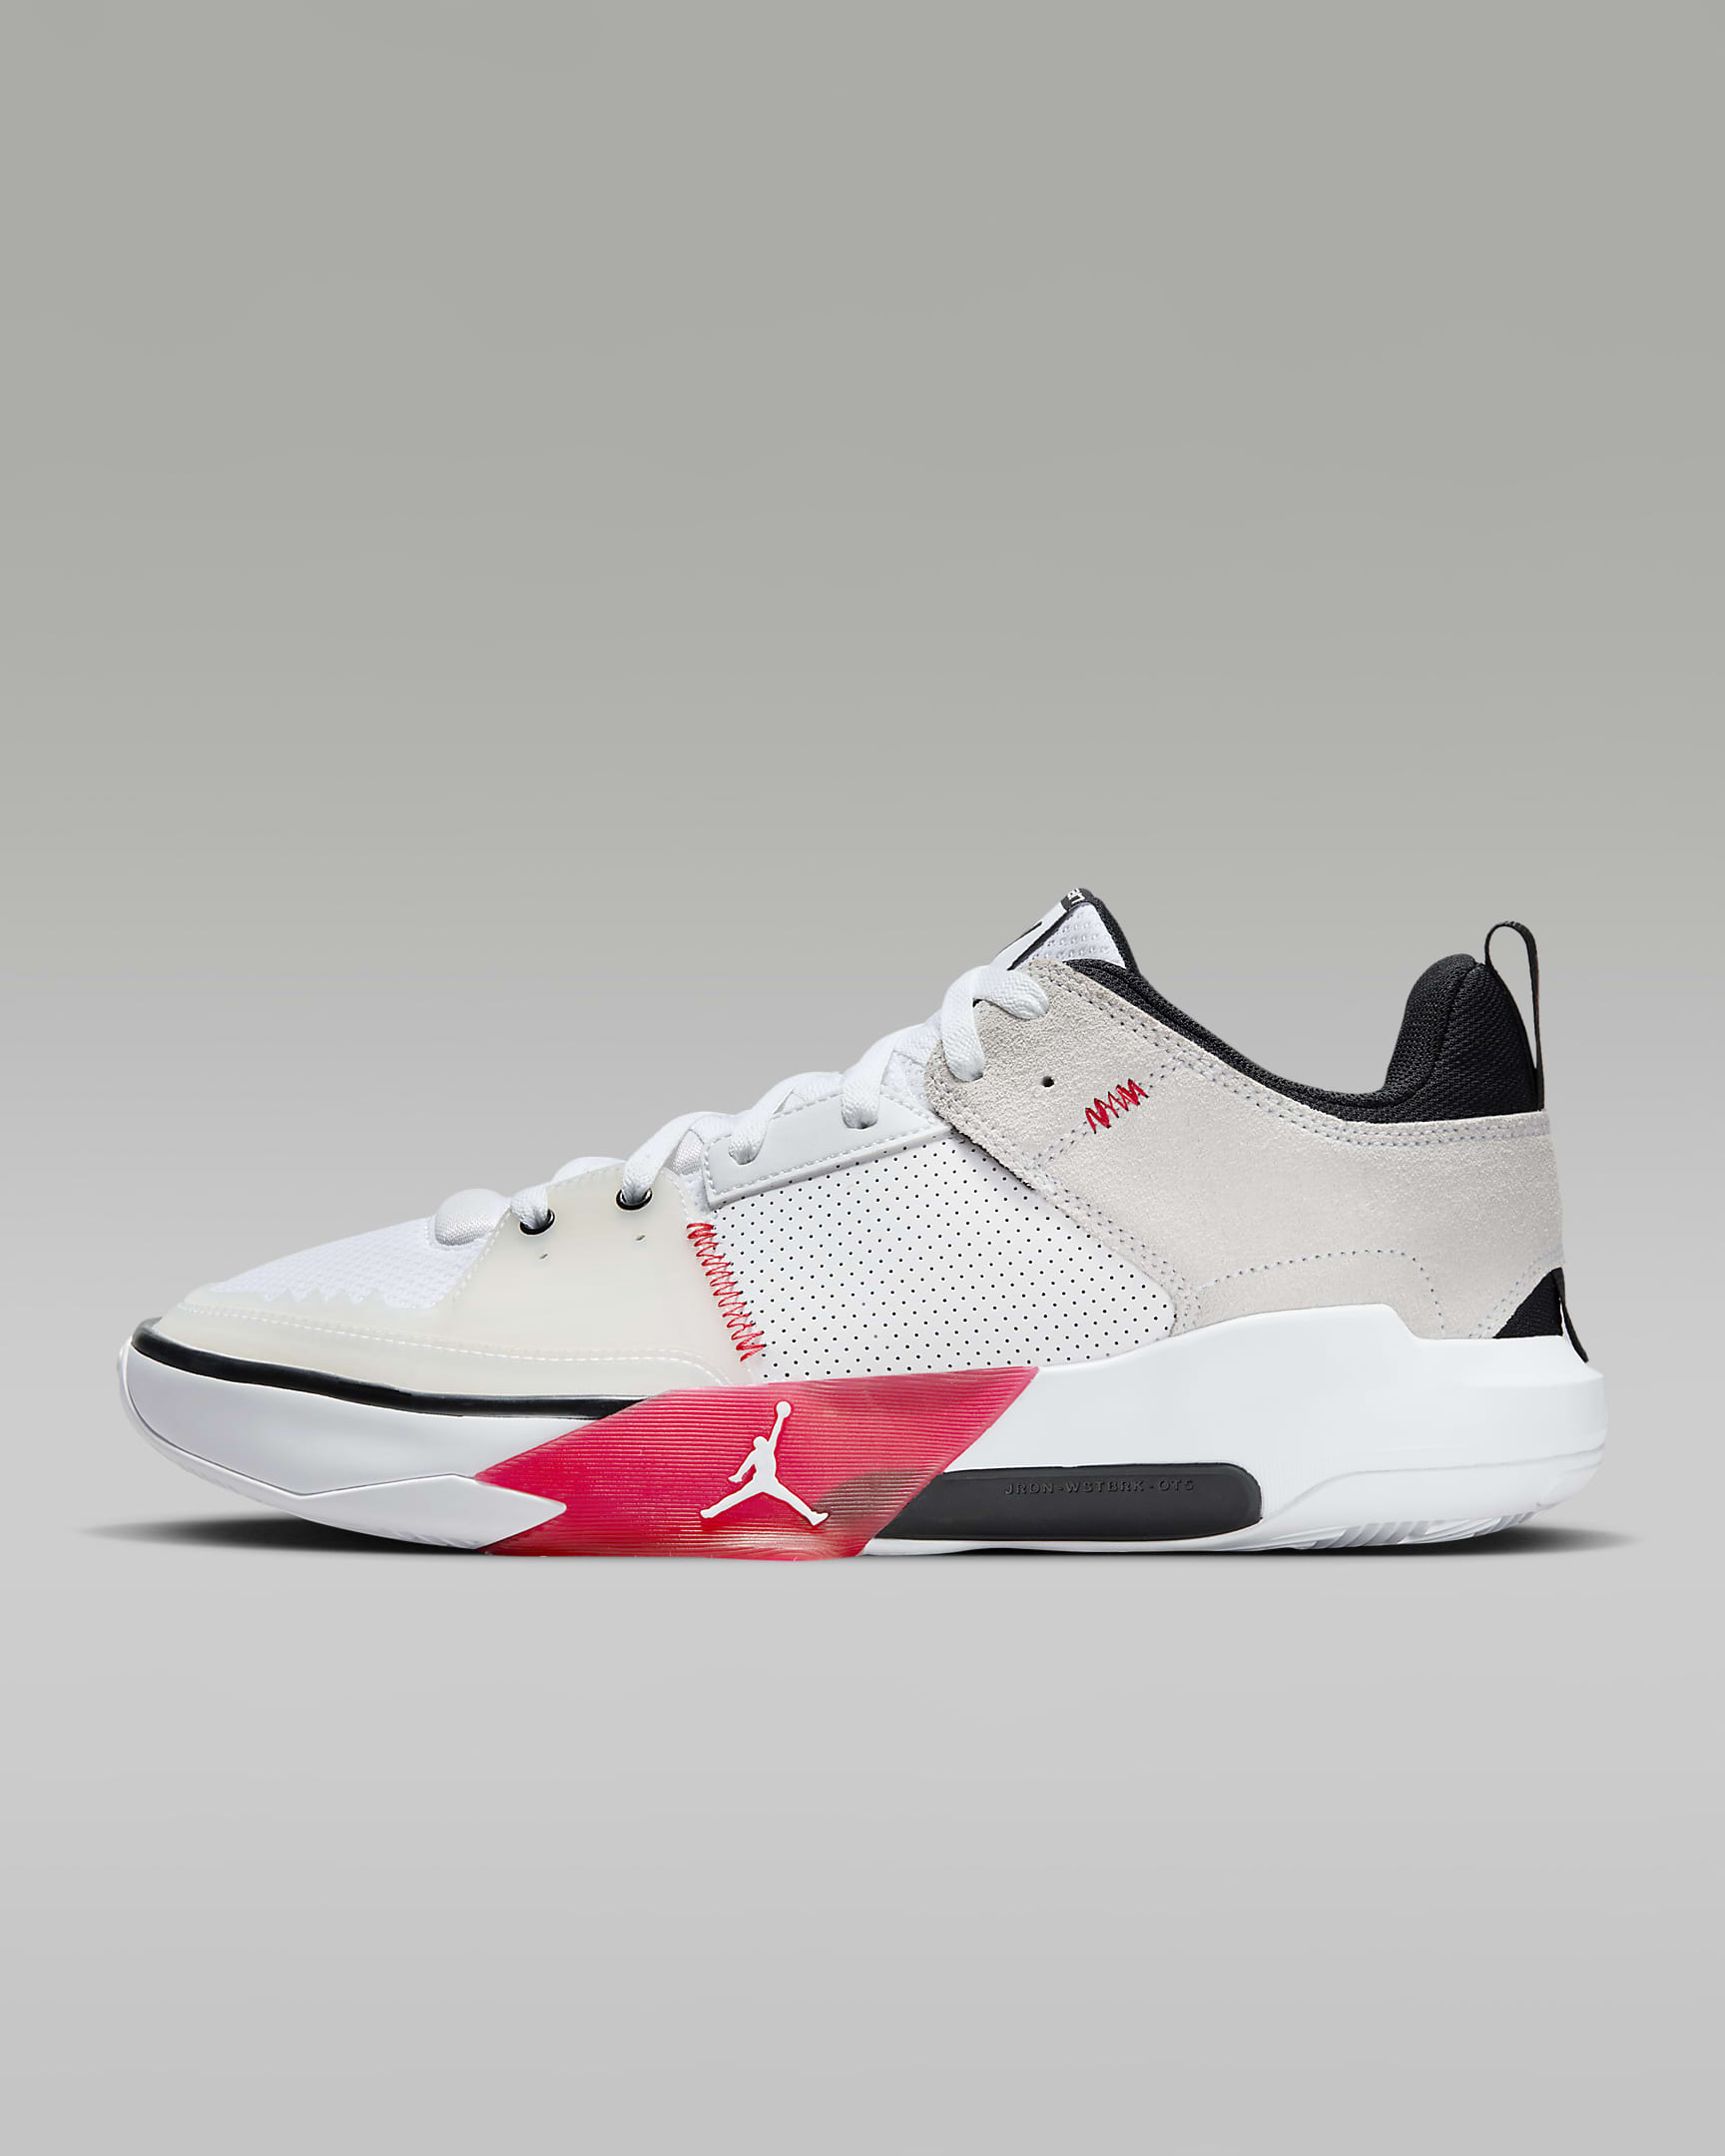 Nike Jordan One Take 5 Basketball Shoes (White/Black/University Red) $70.97 + Free Shipping